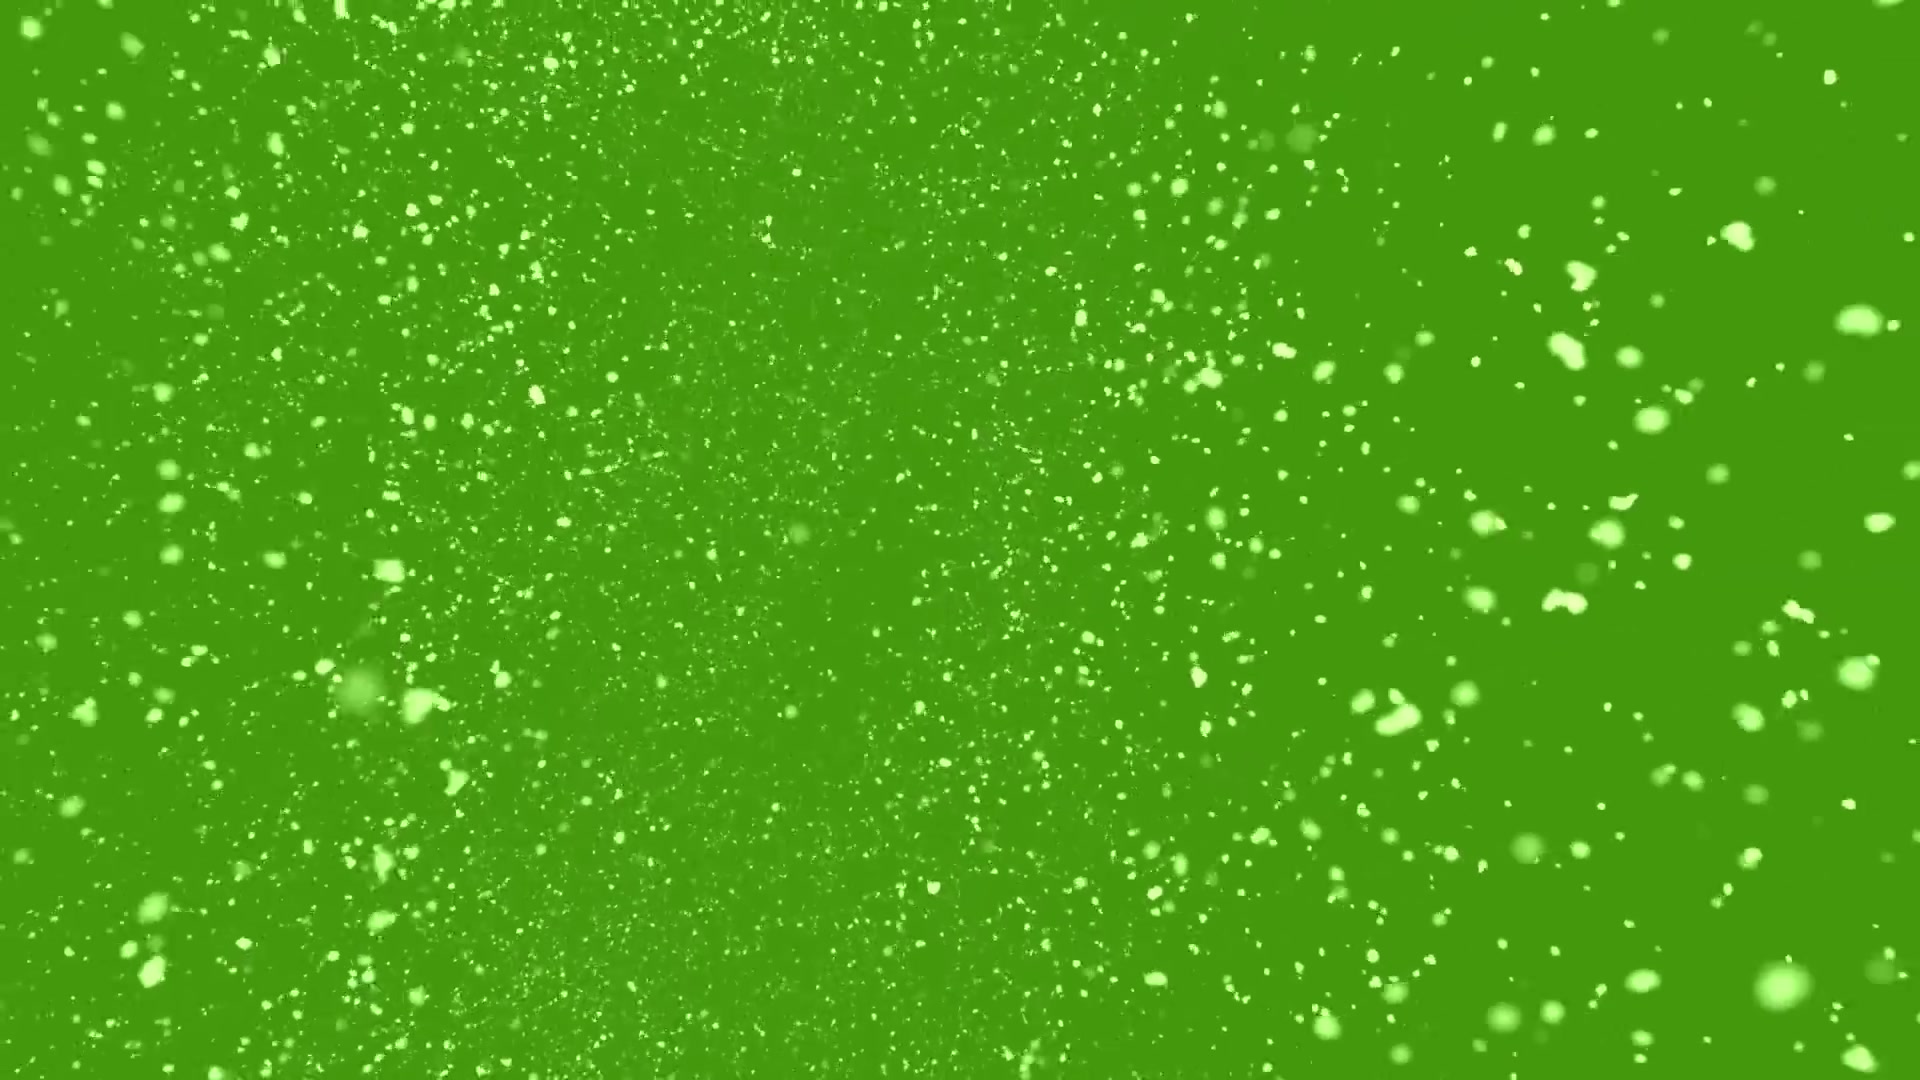 绿幕素材鸟瞰雪粒绿幕素材包无版权无水印1080phd